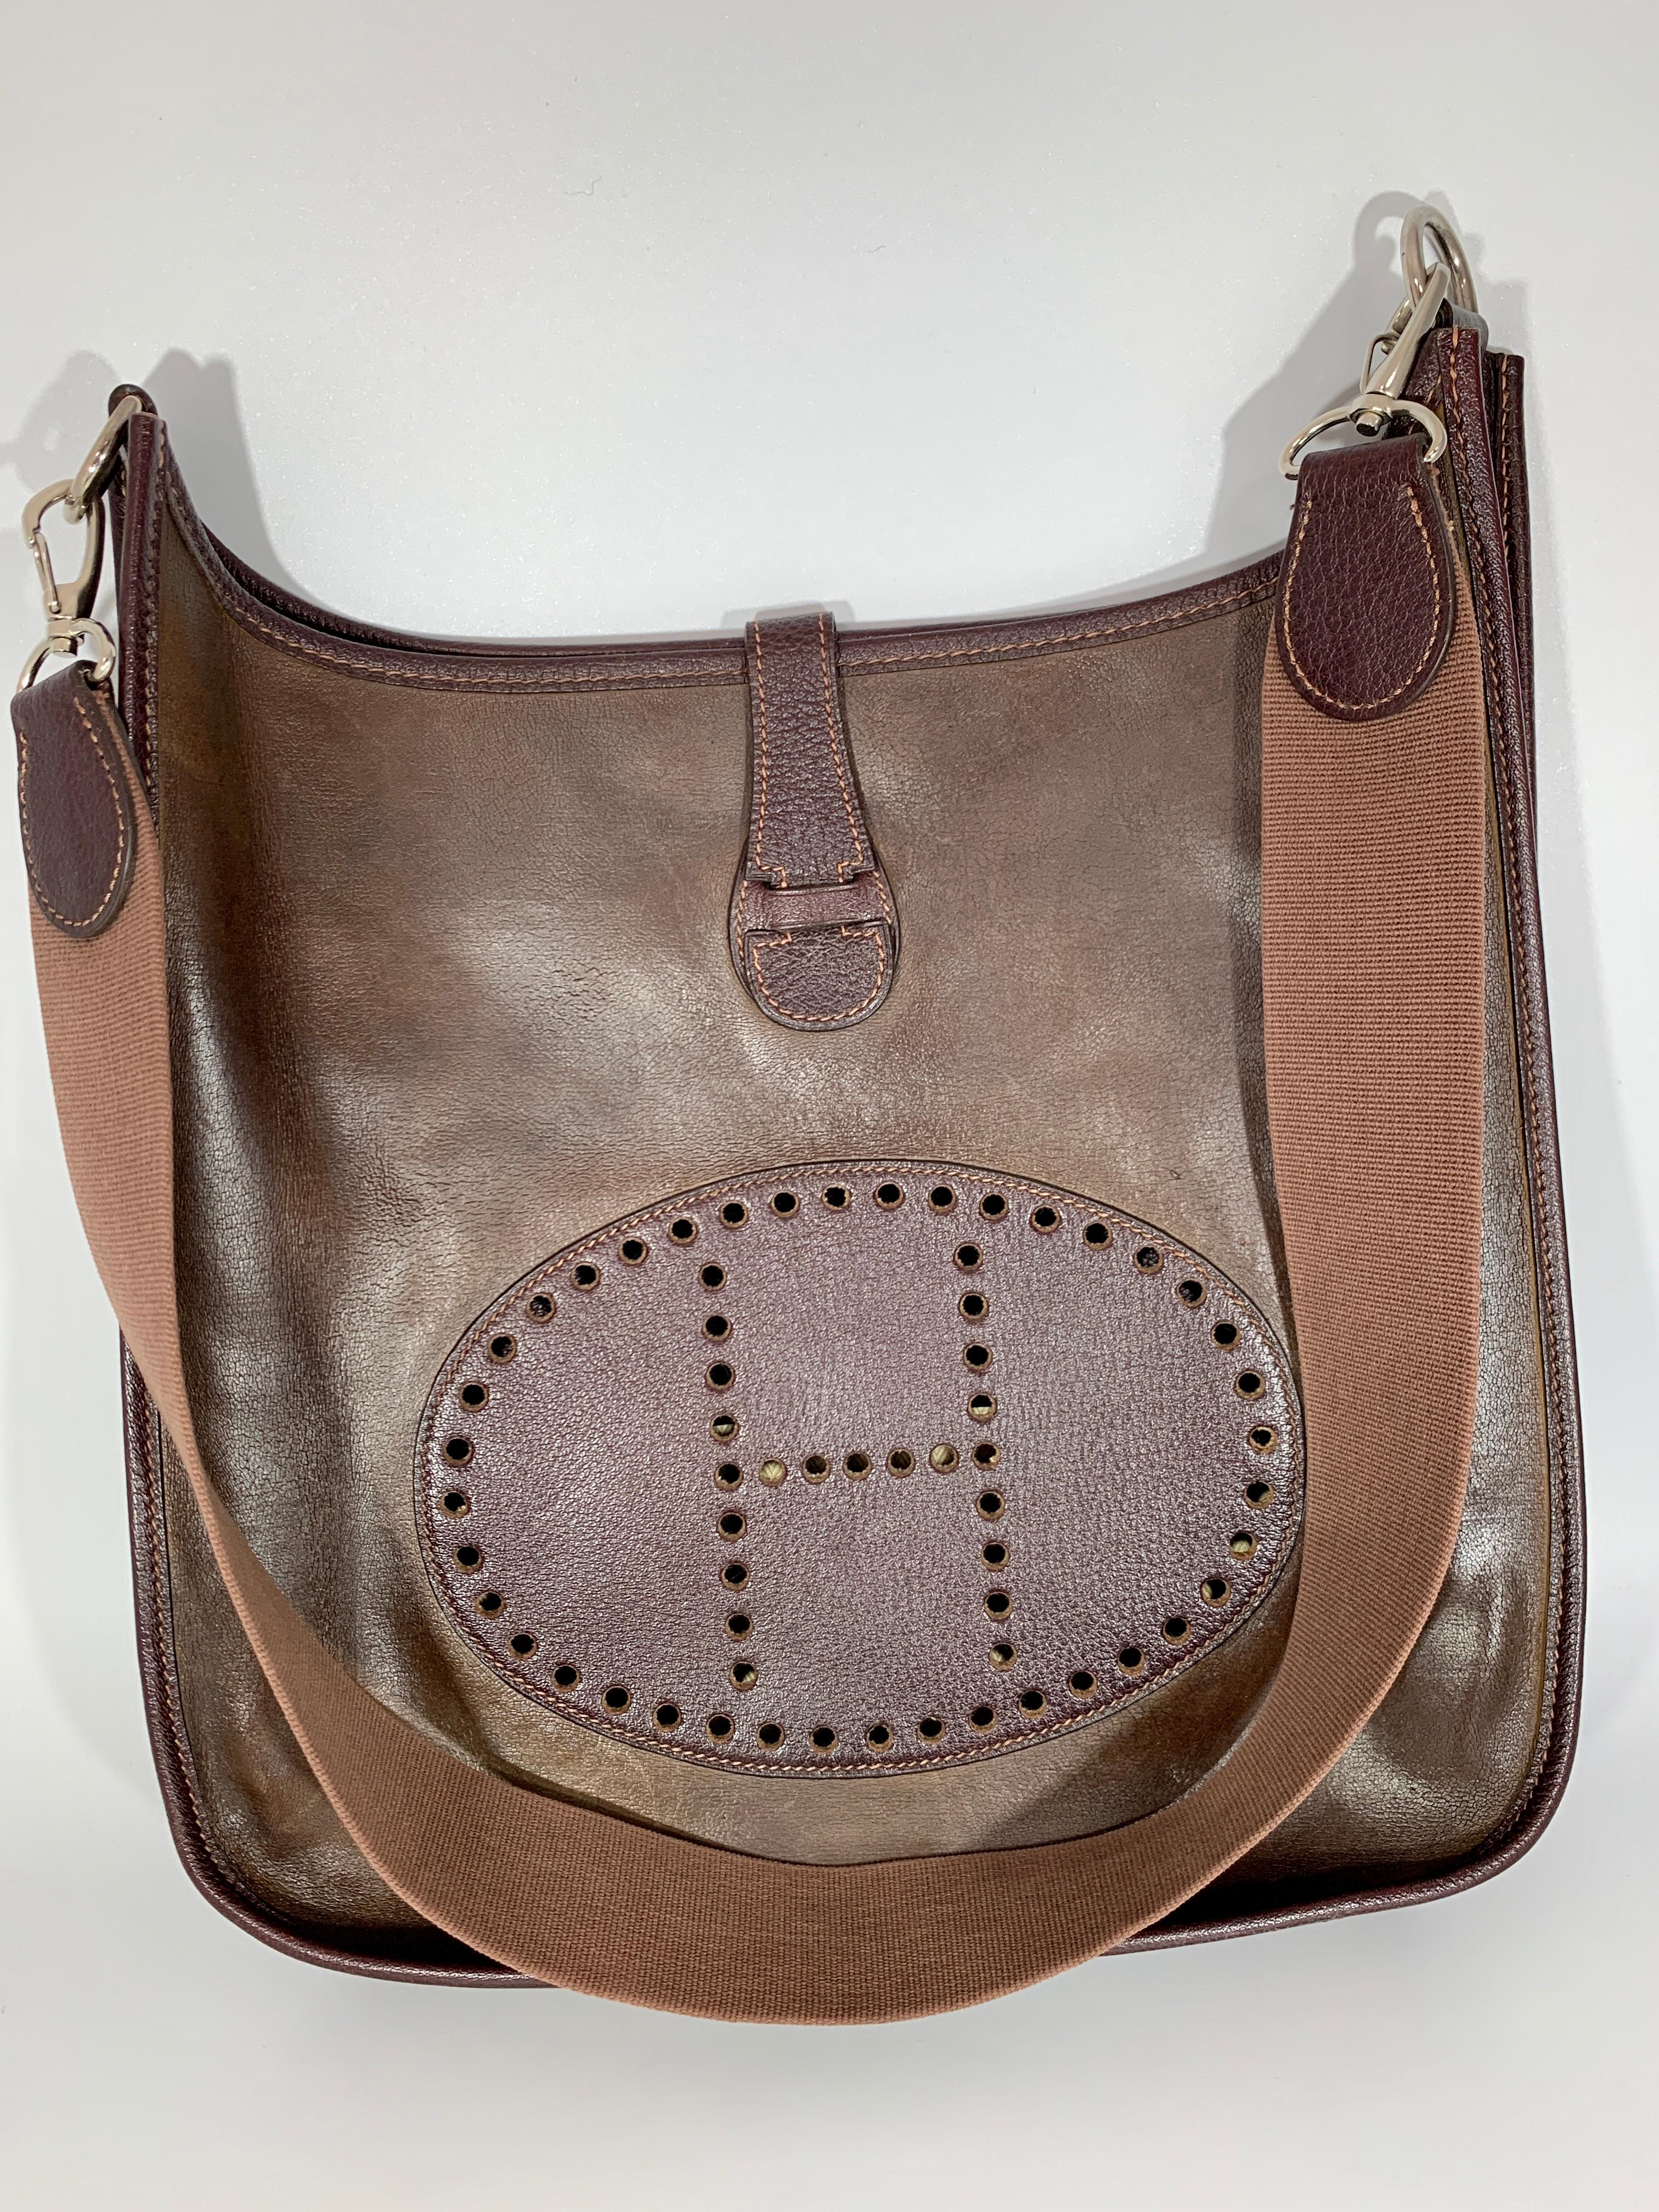 Hermes Evelyne shoulder bag
Dark Brown Leather bag 
embossed leather patch is Very Dark brown
One inside pocket 8 